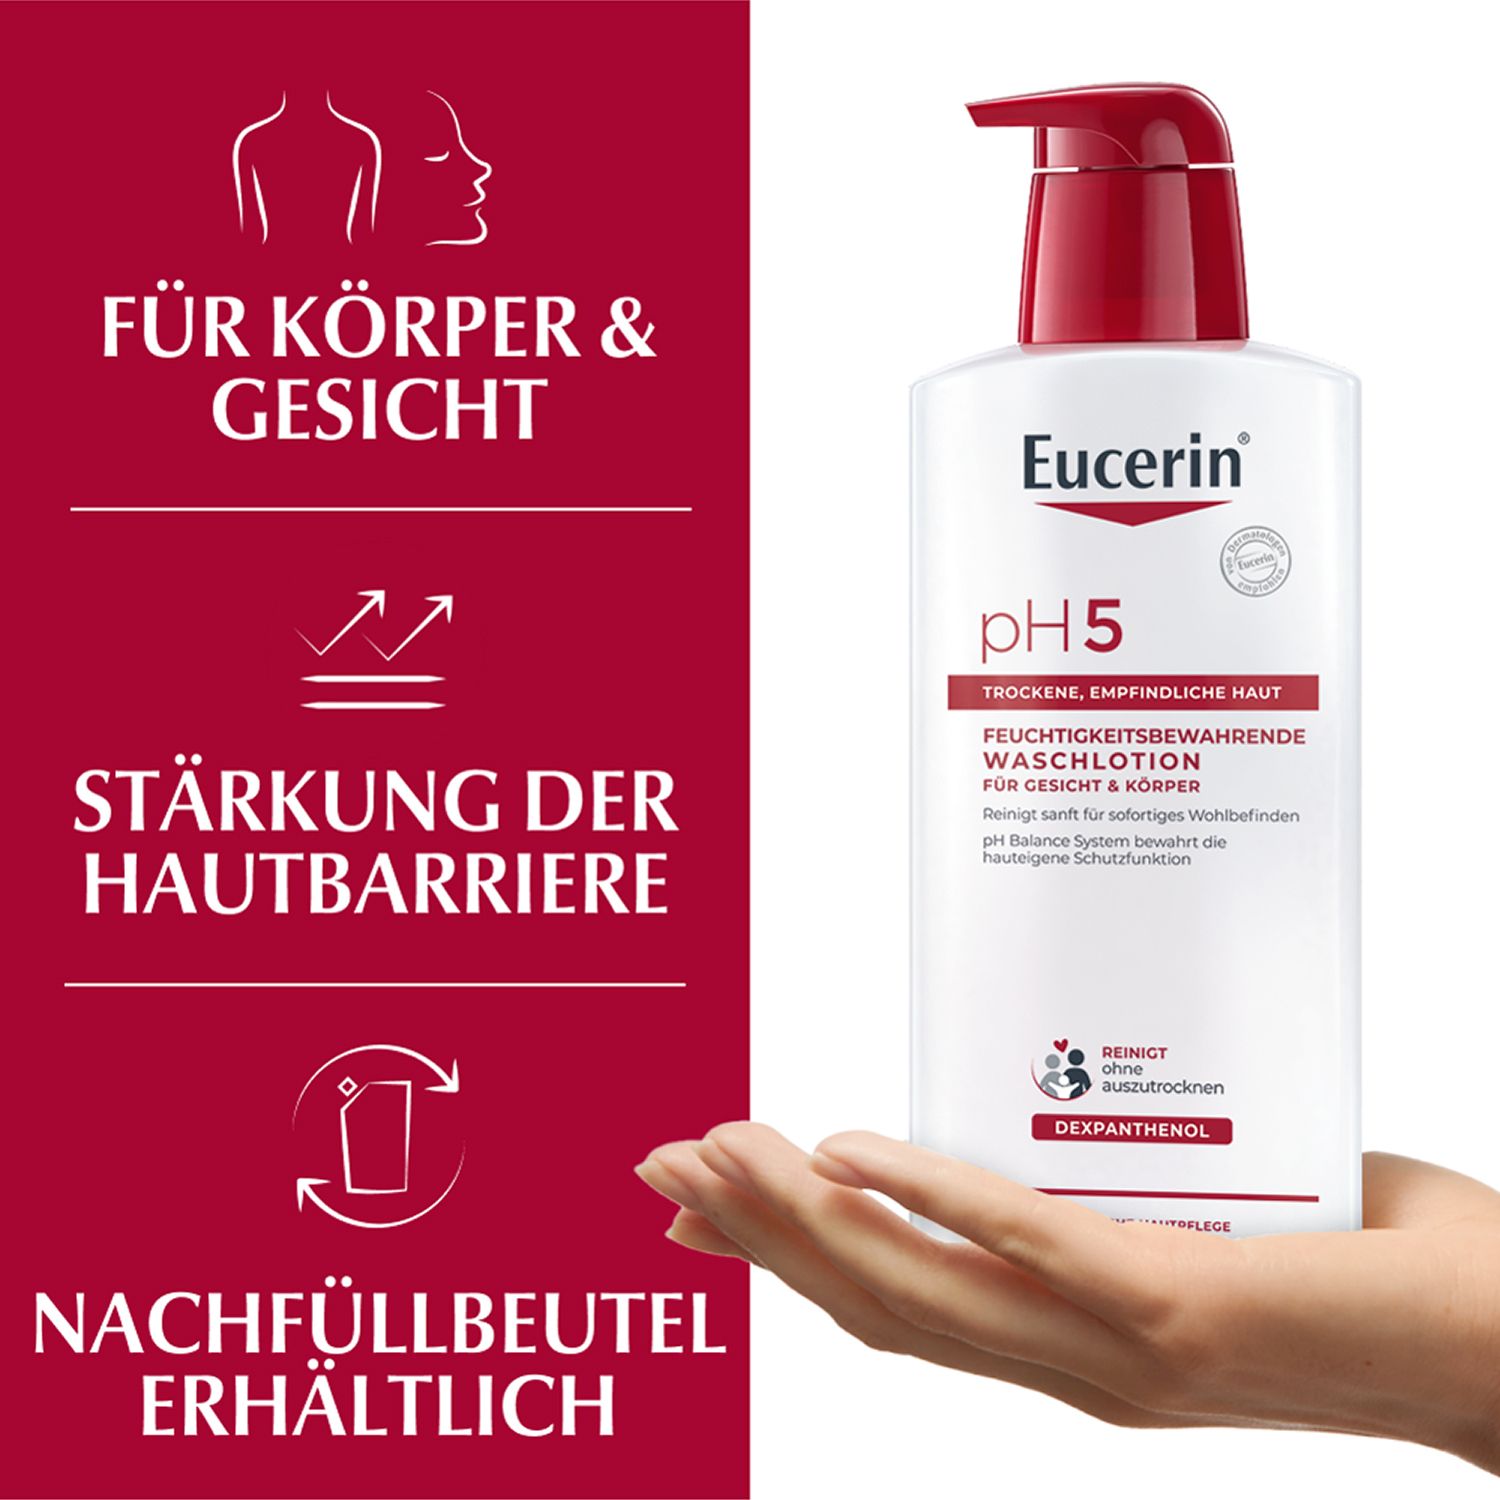 Eucerin® pH5 Waschlotion für Körper, Gesicht und Hände  – bietet empfindlicher und trockener Haut eine milde Reinigung & bewahrt die Schutzfunktion der Haut